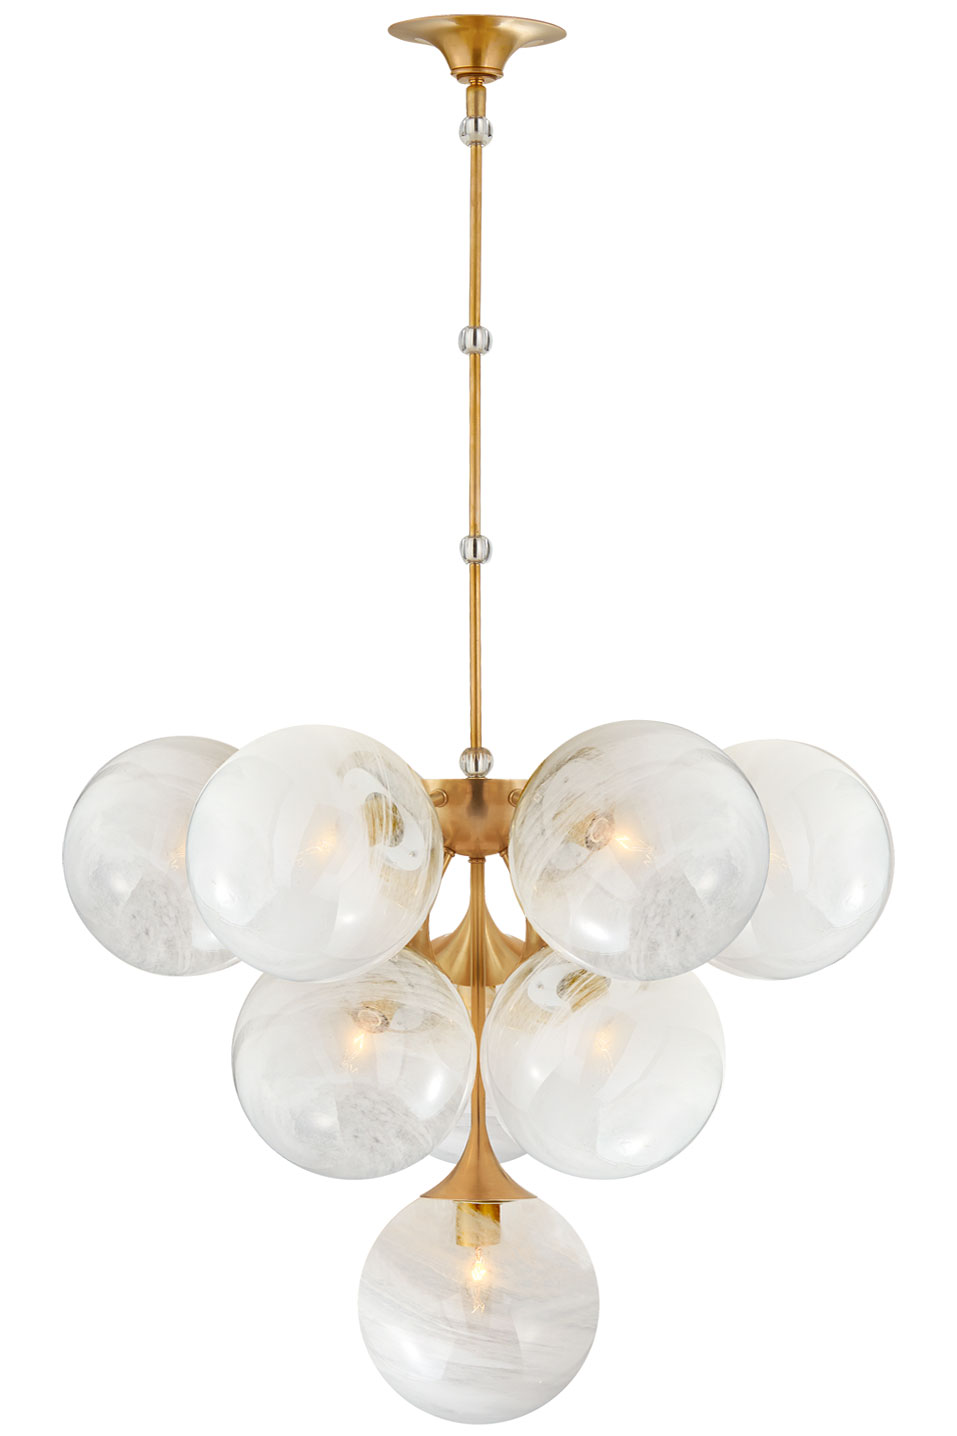 Cristol lustre 10 lumières boule blanche et doré. Visual Comfort&Co.. 